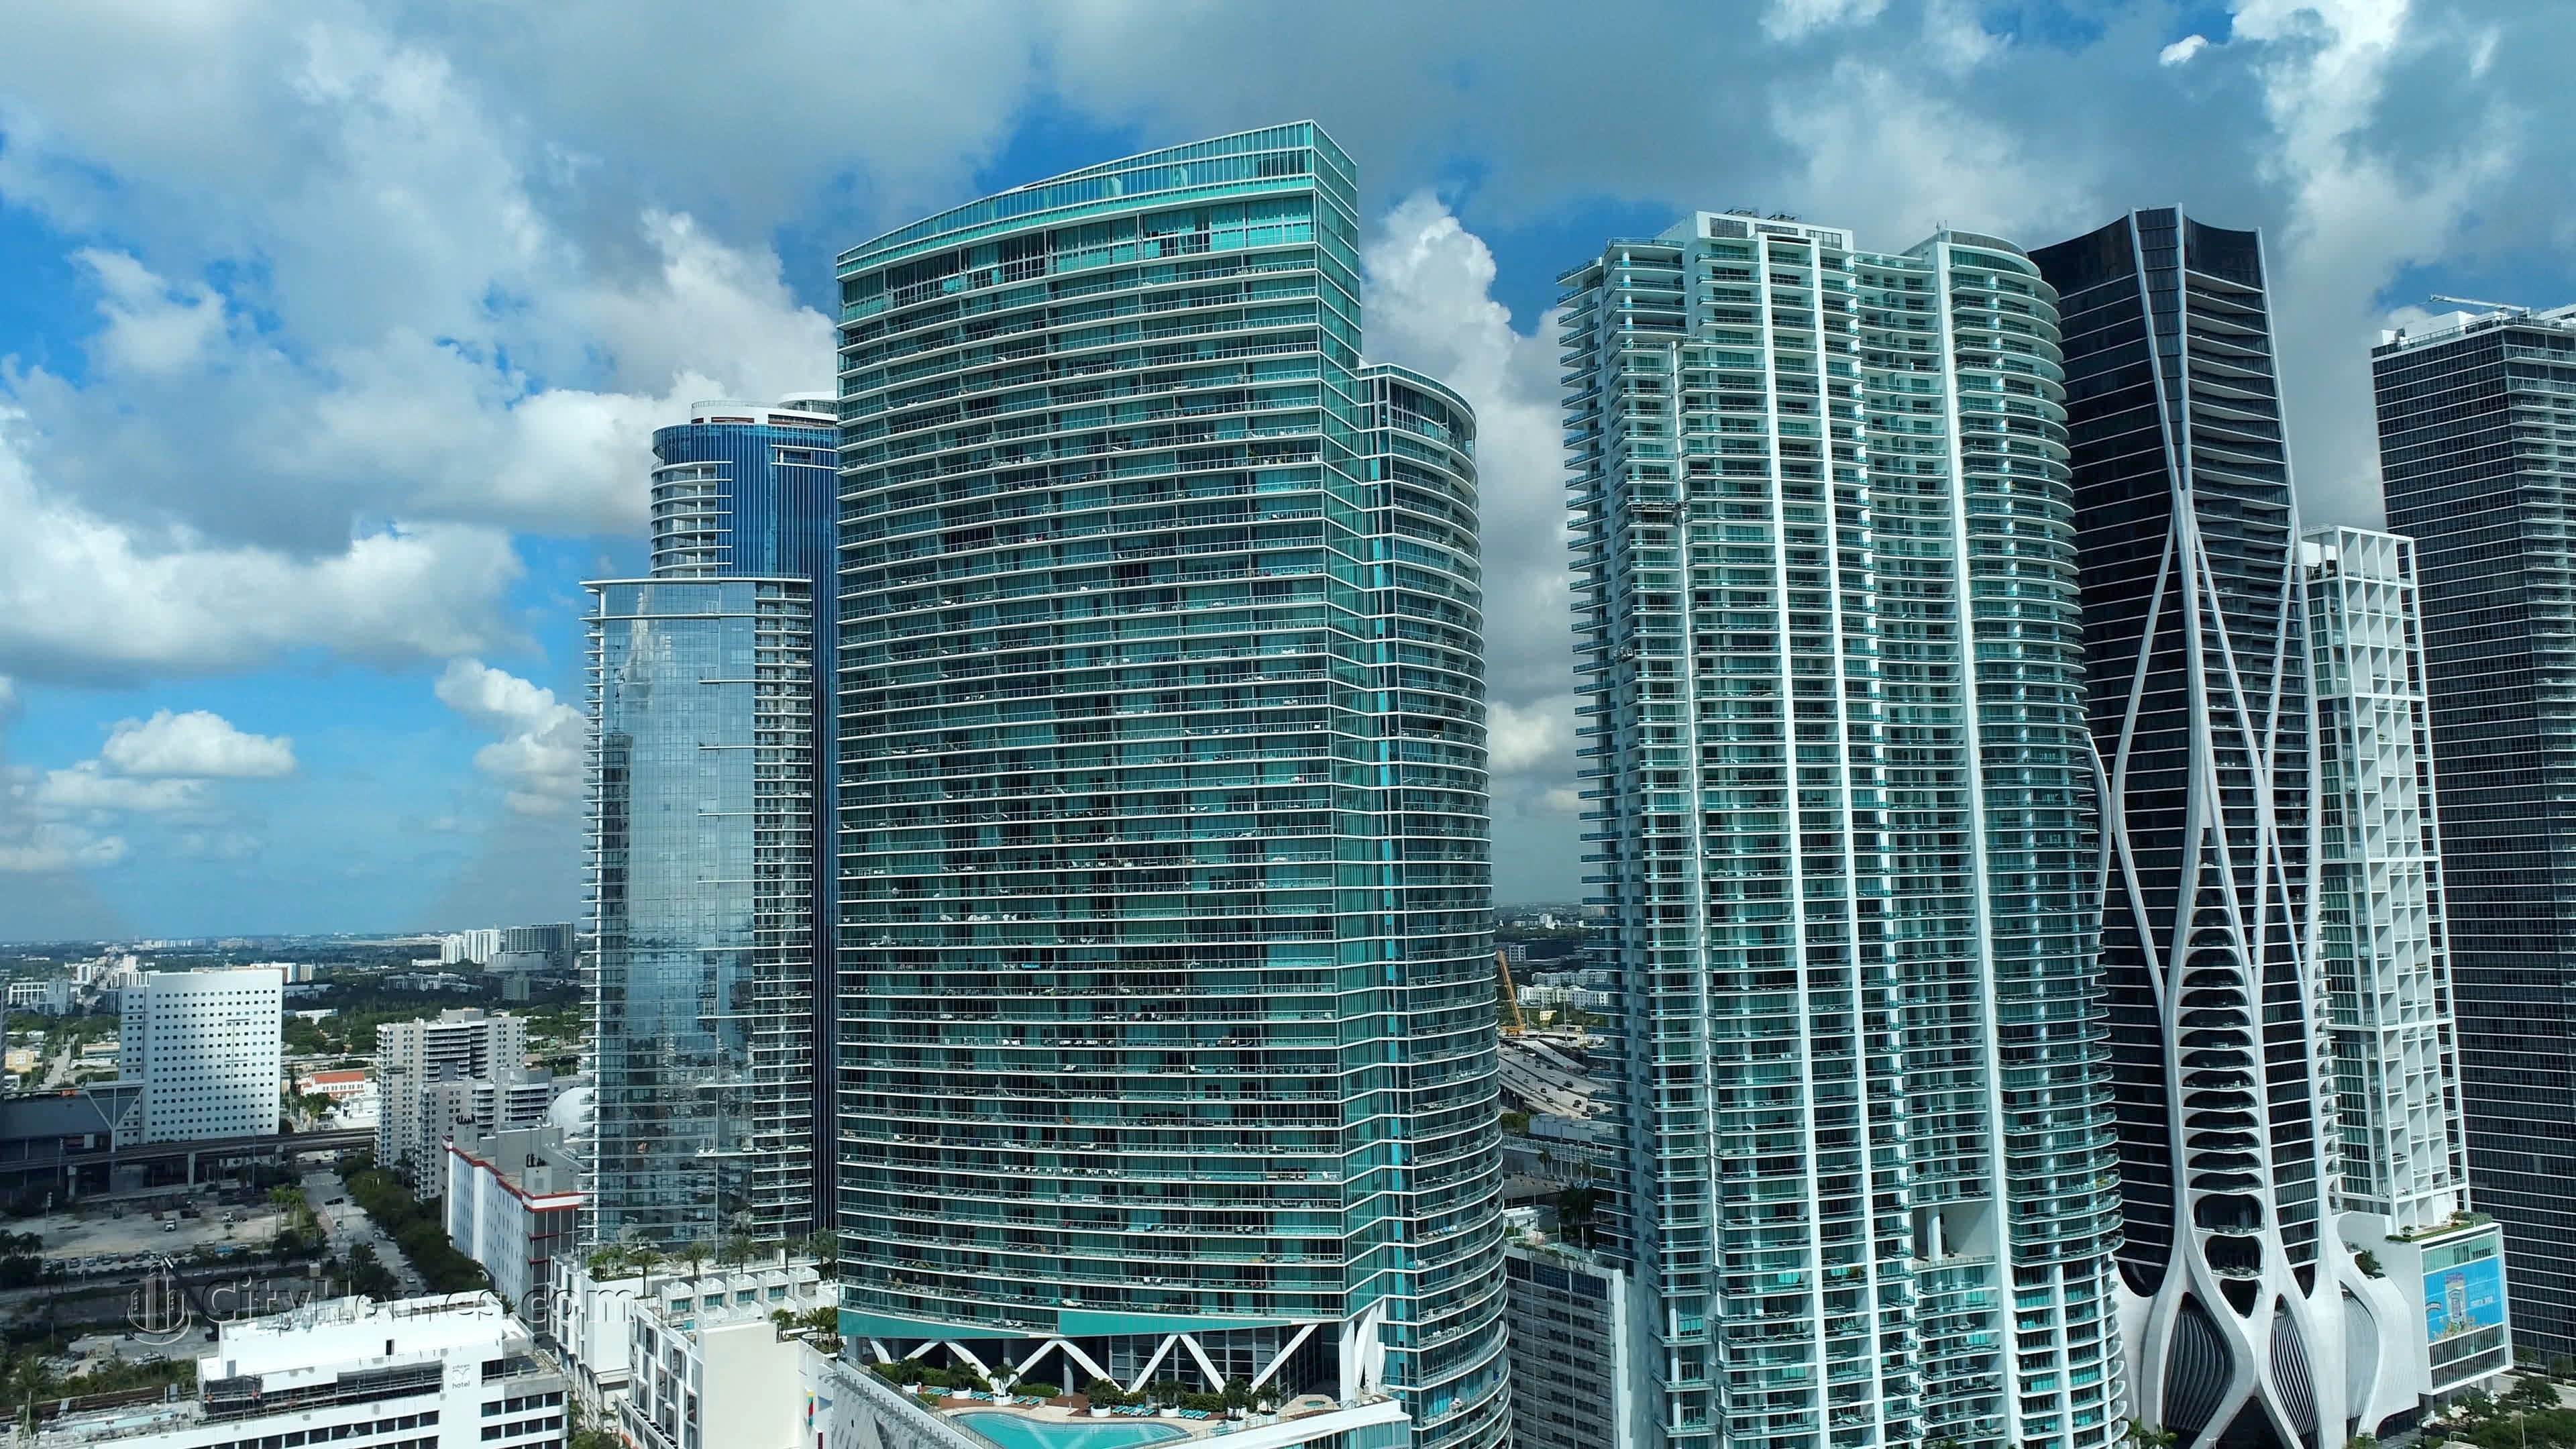 3. Marina Blue edificio a 888 Biscayne Blvd, Miami, FL 33132